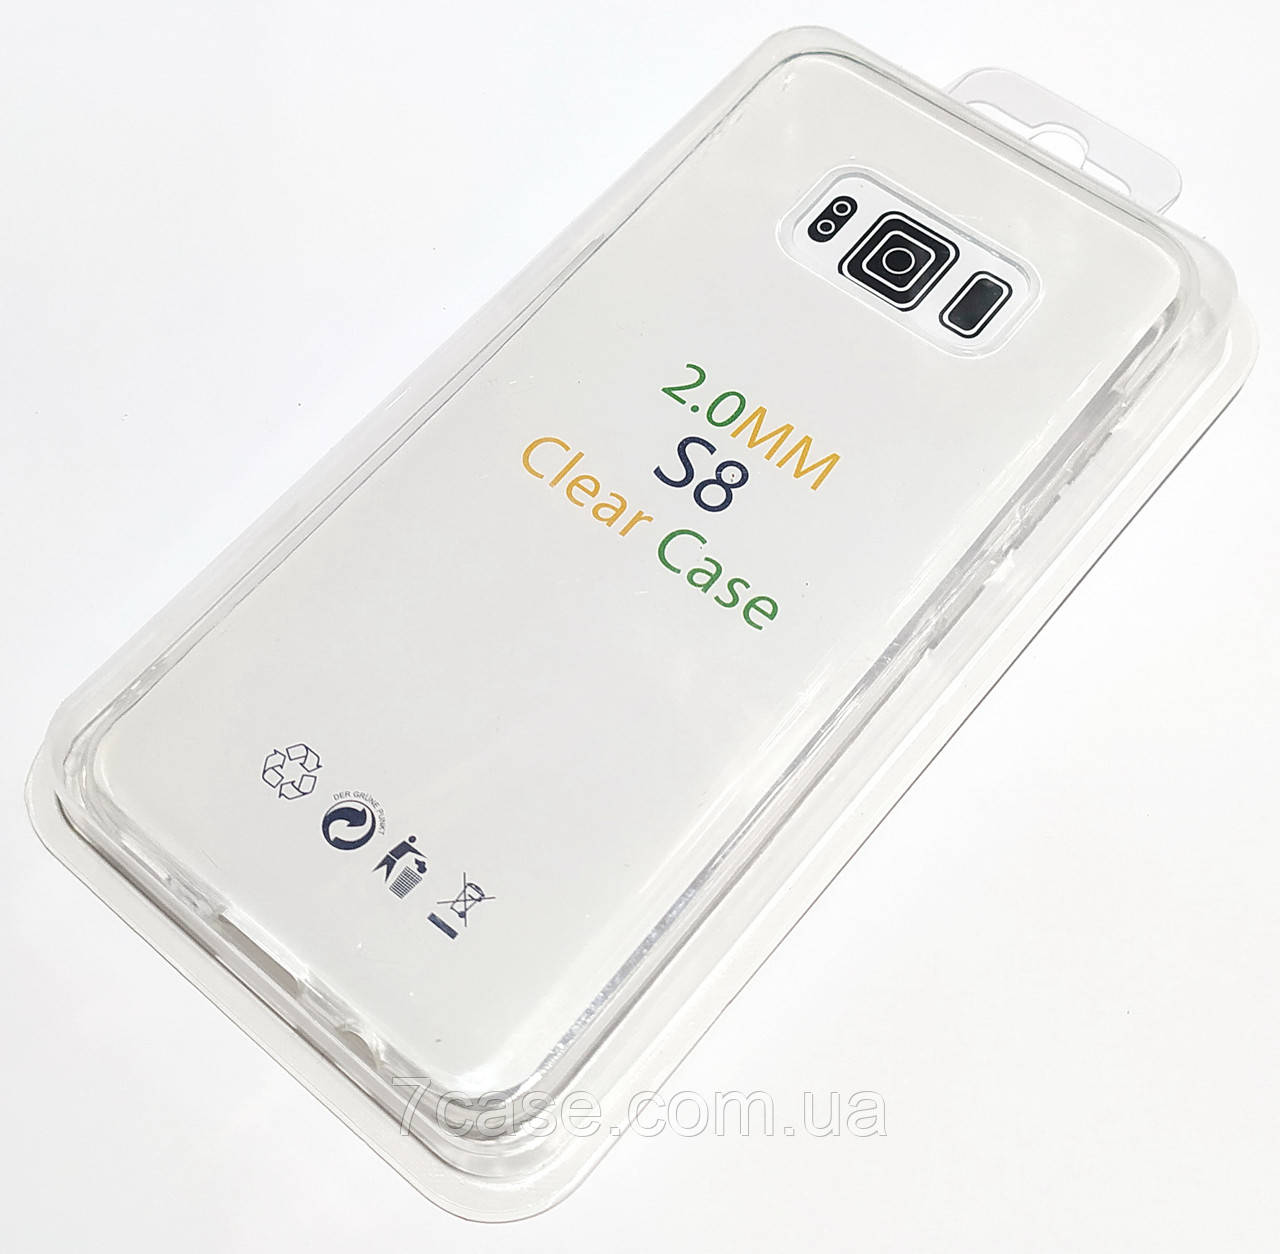 Чохол 2 мм для Samsung Galaxy S8 G950 силіконовий прозорий Case Silicone Clear 2.0mm